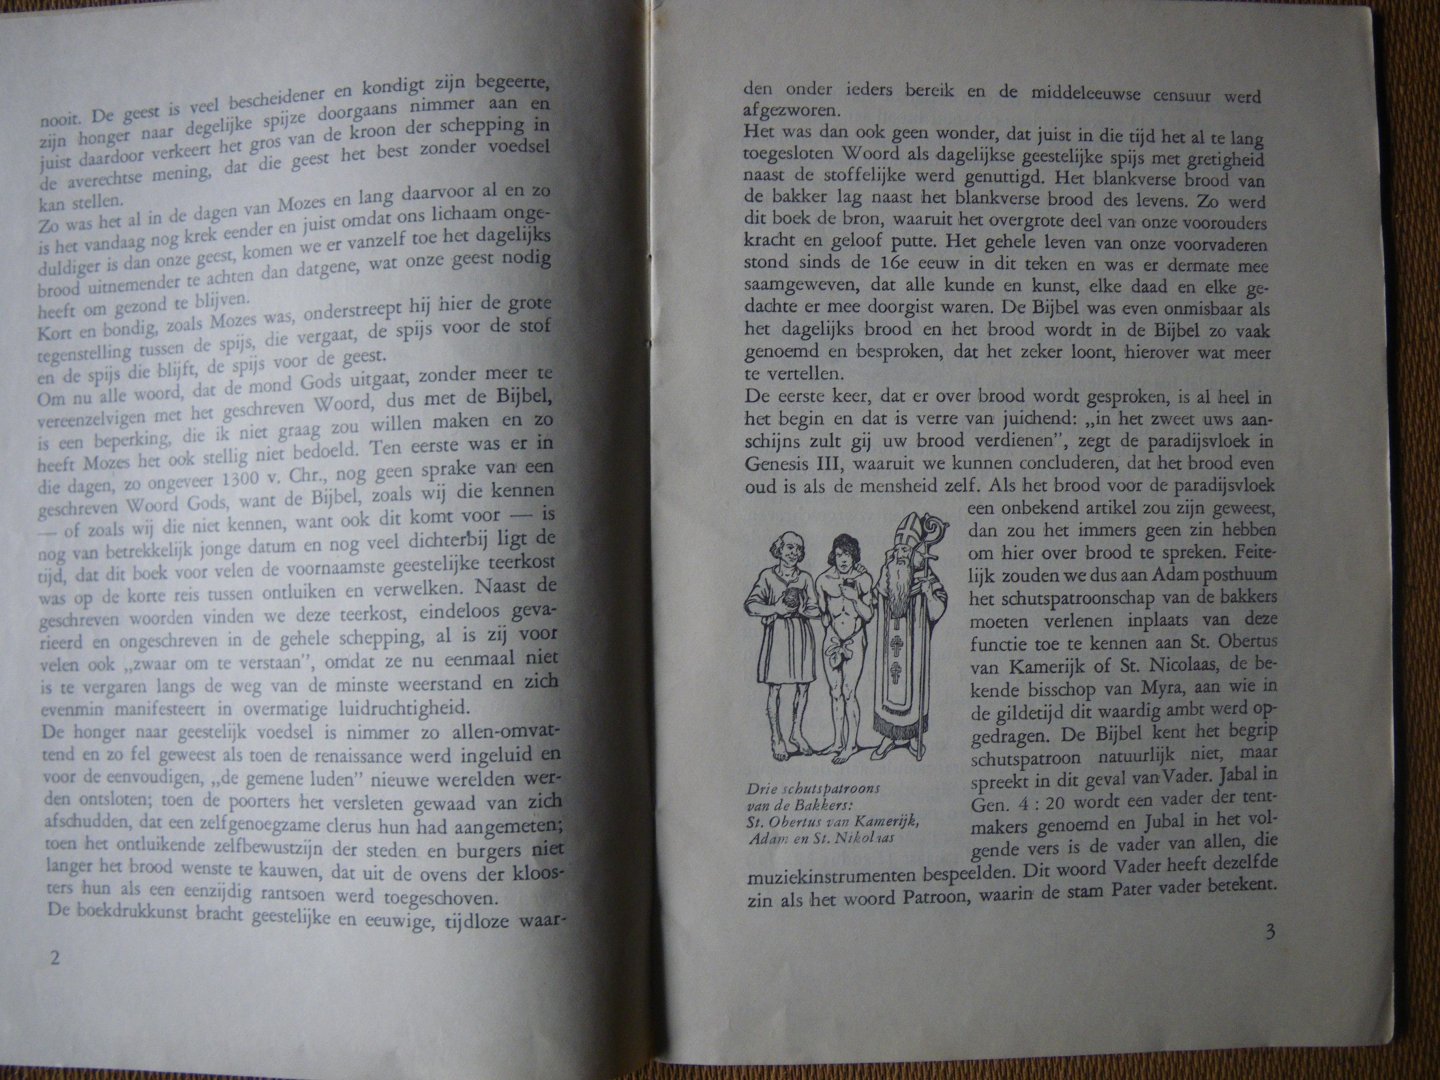 Meischke M.C.A. Ir - De Bijbel en ons dagelijks brood - de bakkersboekjes van Zeelandia eerste gedeelte no. 16-